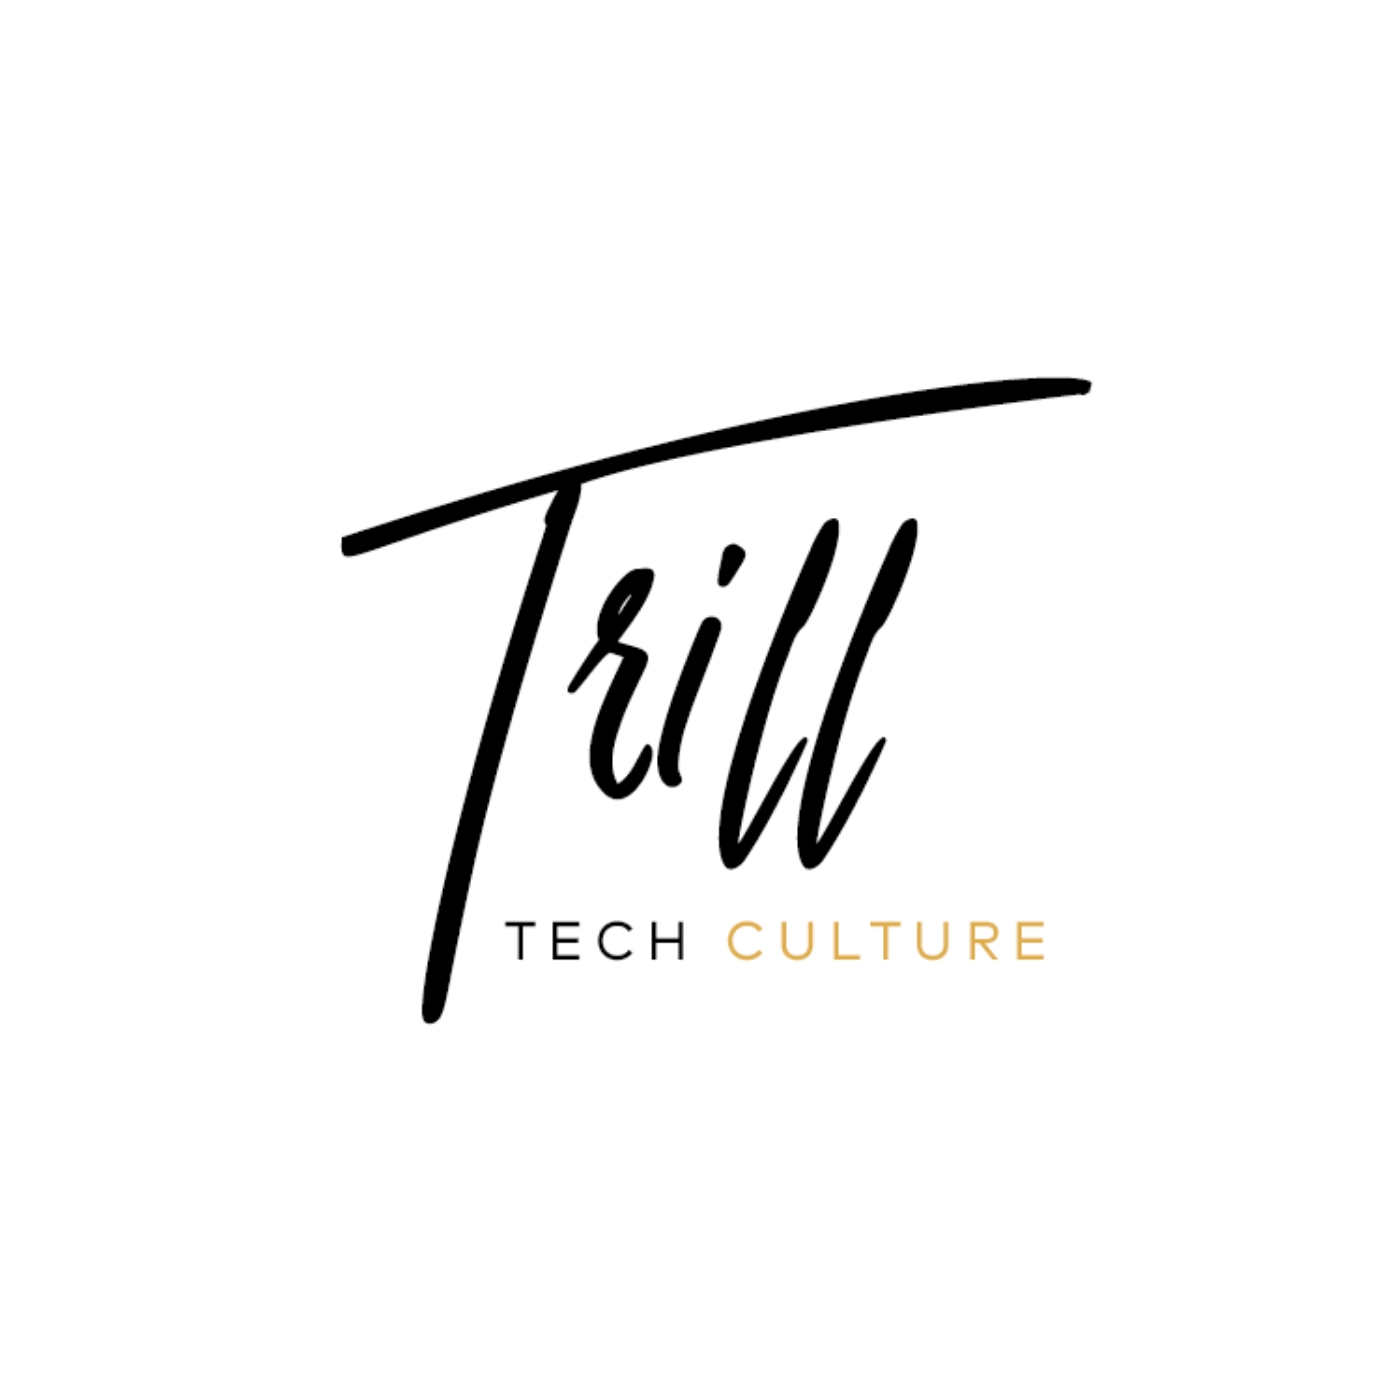 Trill Tech Culture - Season 1 Finale, Episode 8 - Fireside chat w/ Data Journalist Sherrell Dorsey